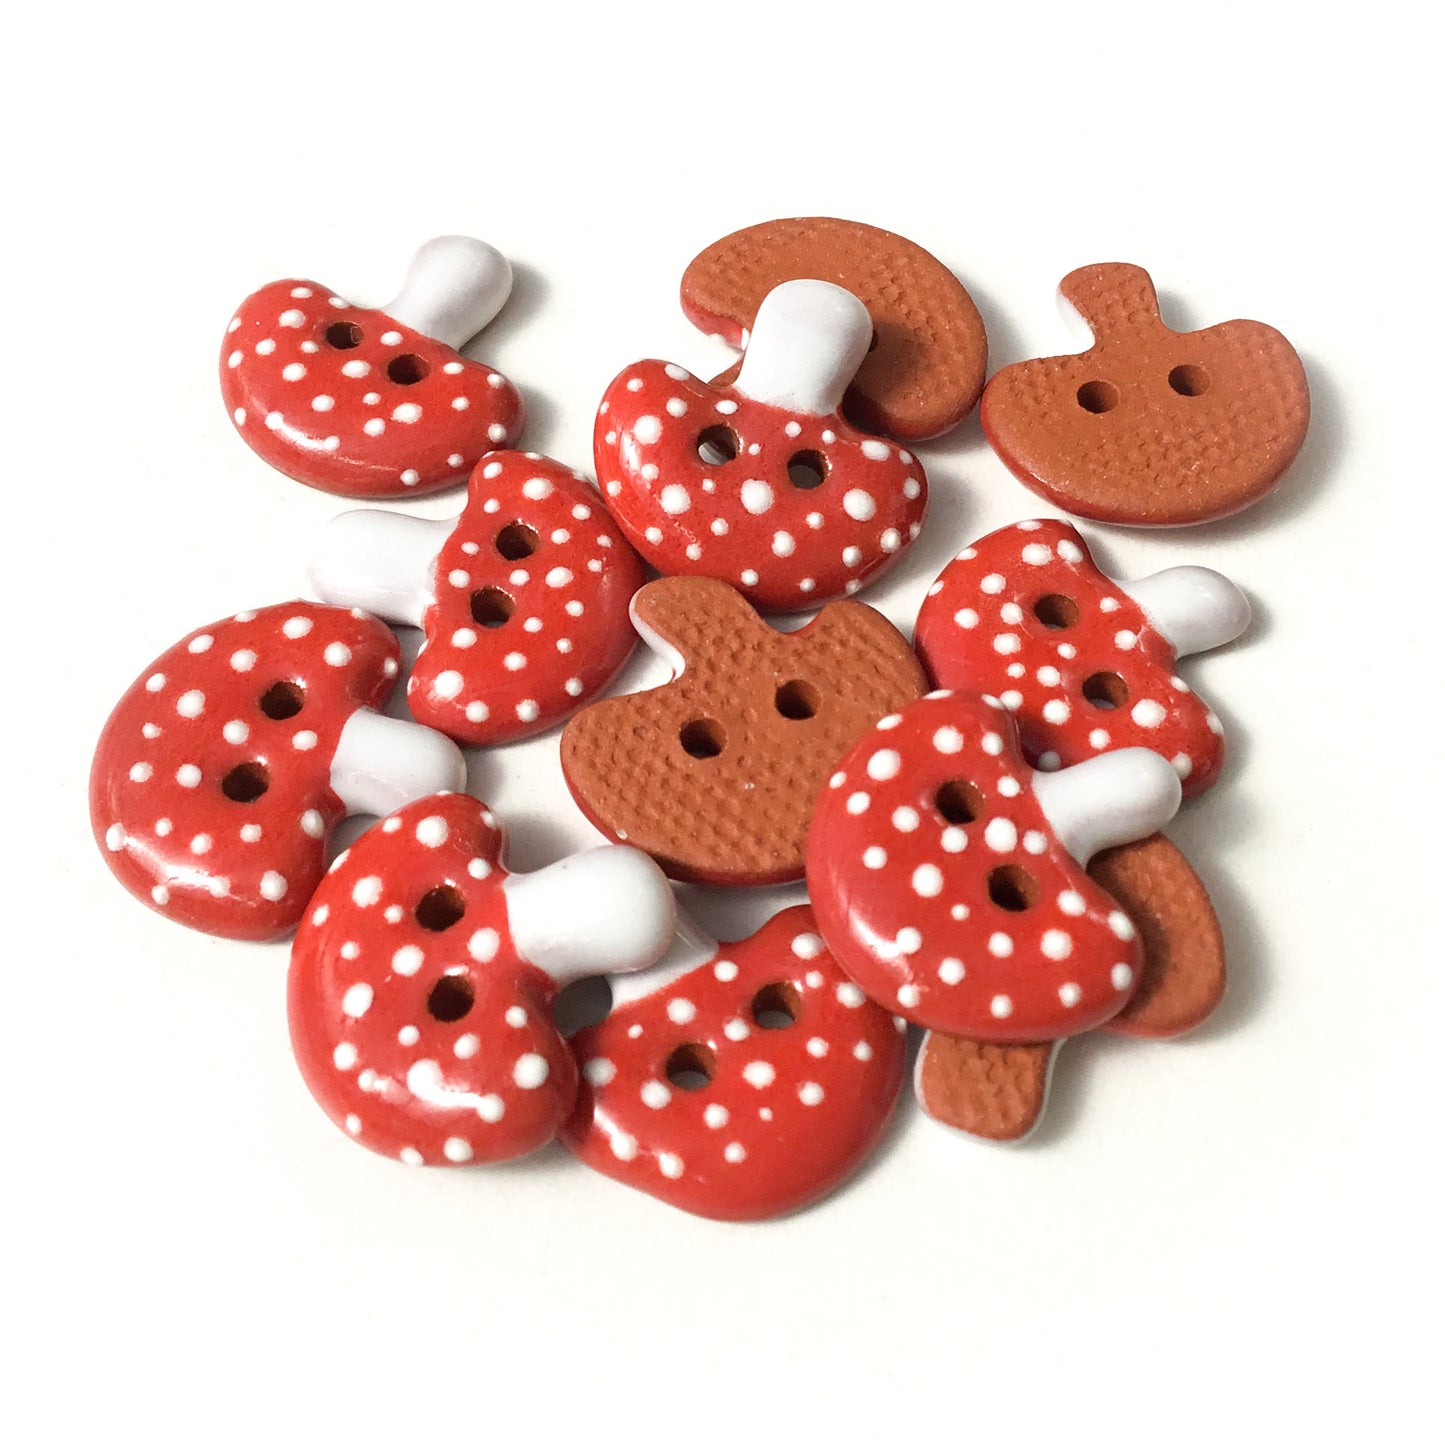 Red Mushroom Buttons - Ceramic Amanita Mushroom Buttons